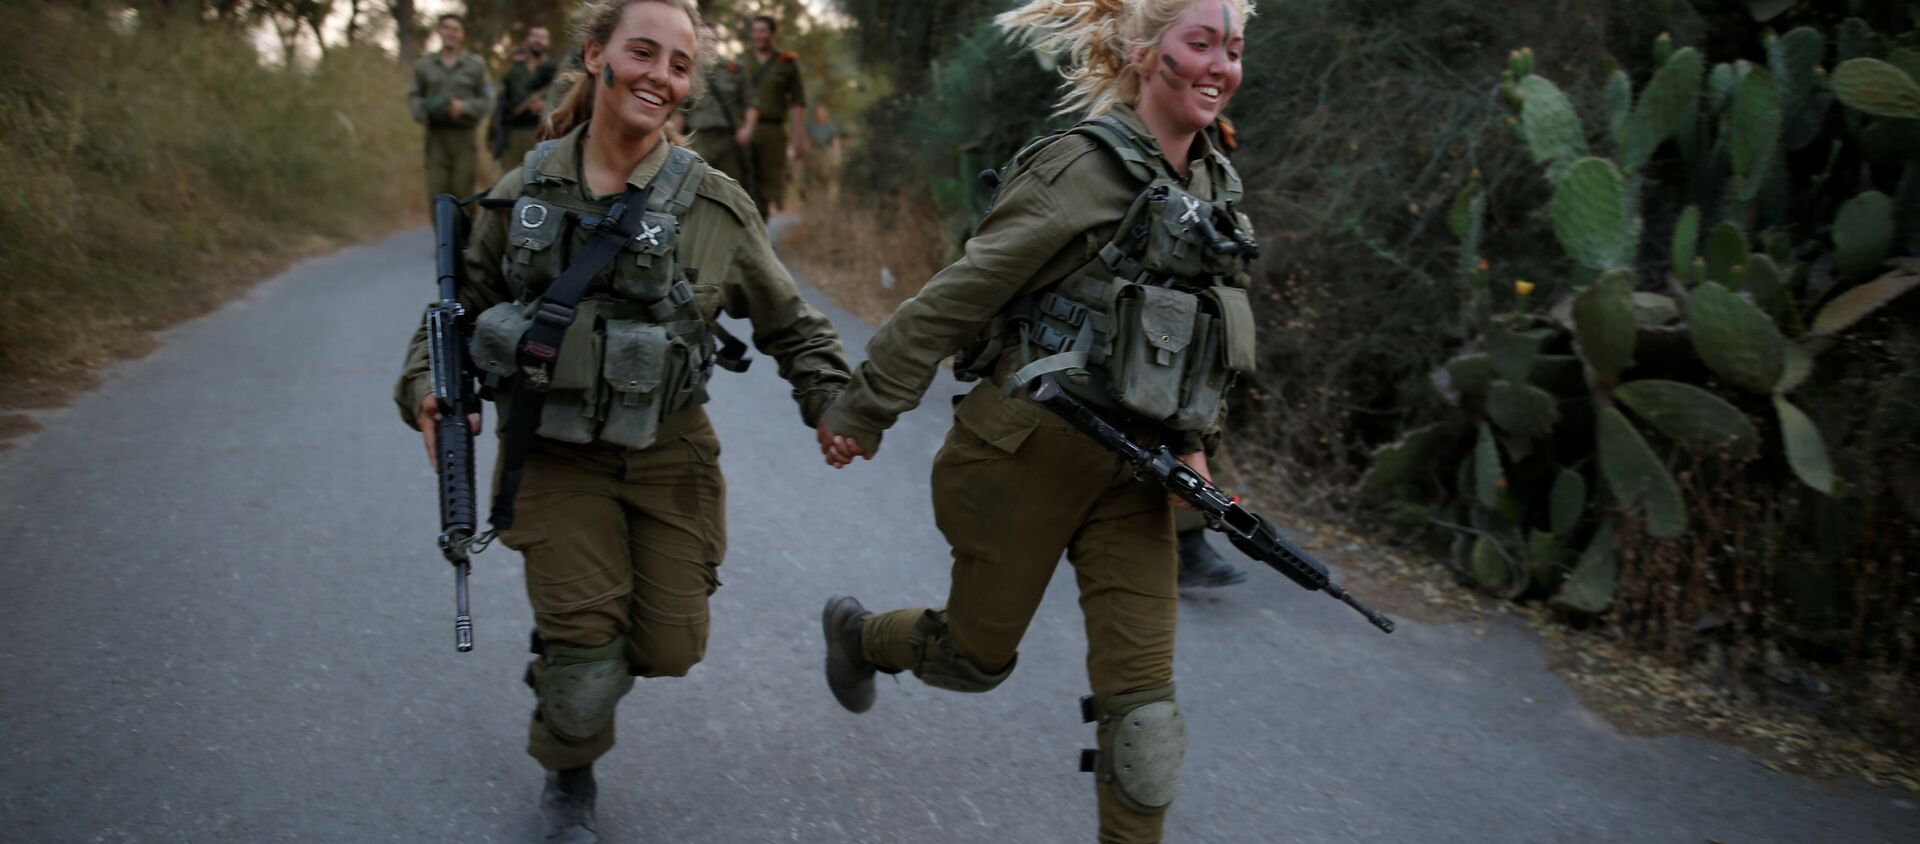 Las damas de hierro: las militares del Ejército israelí - Sputnik Mundo, 1920, 25.05.2016